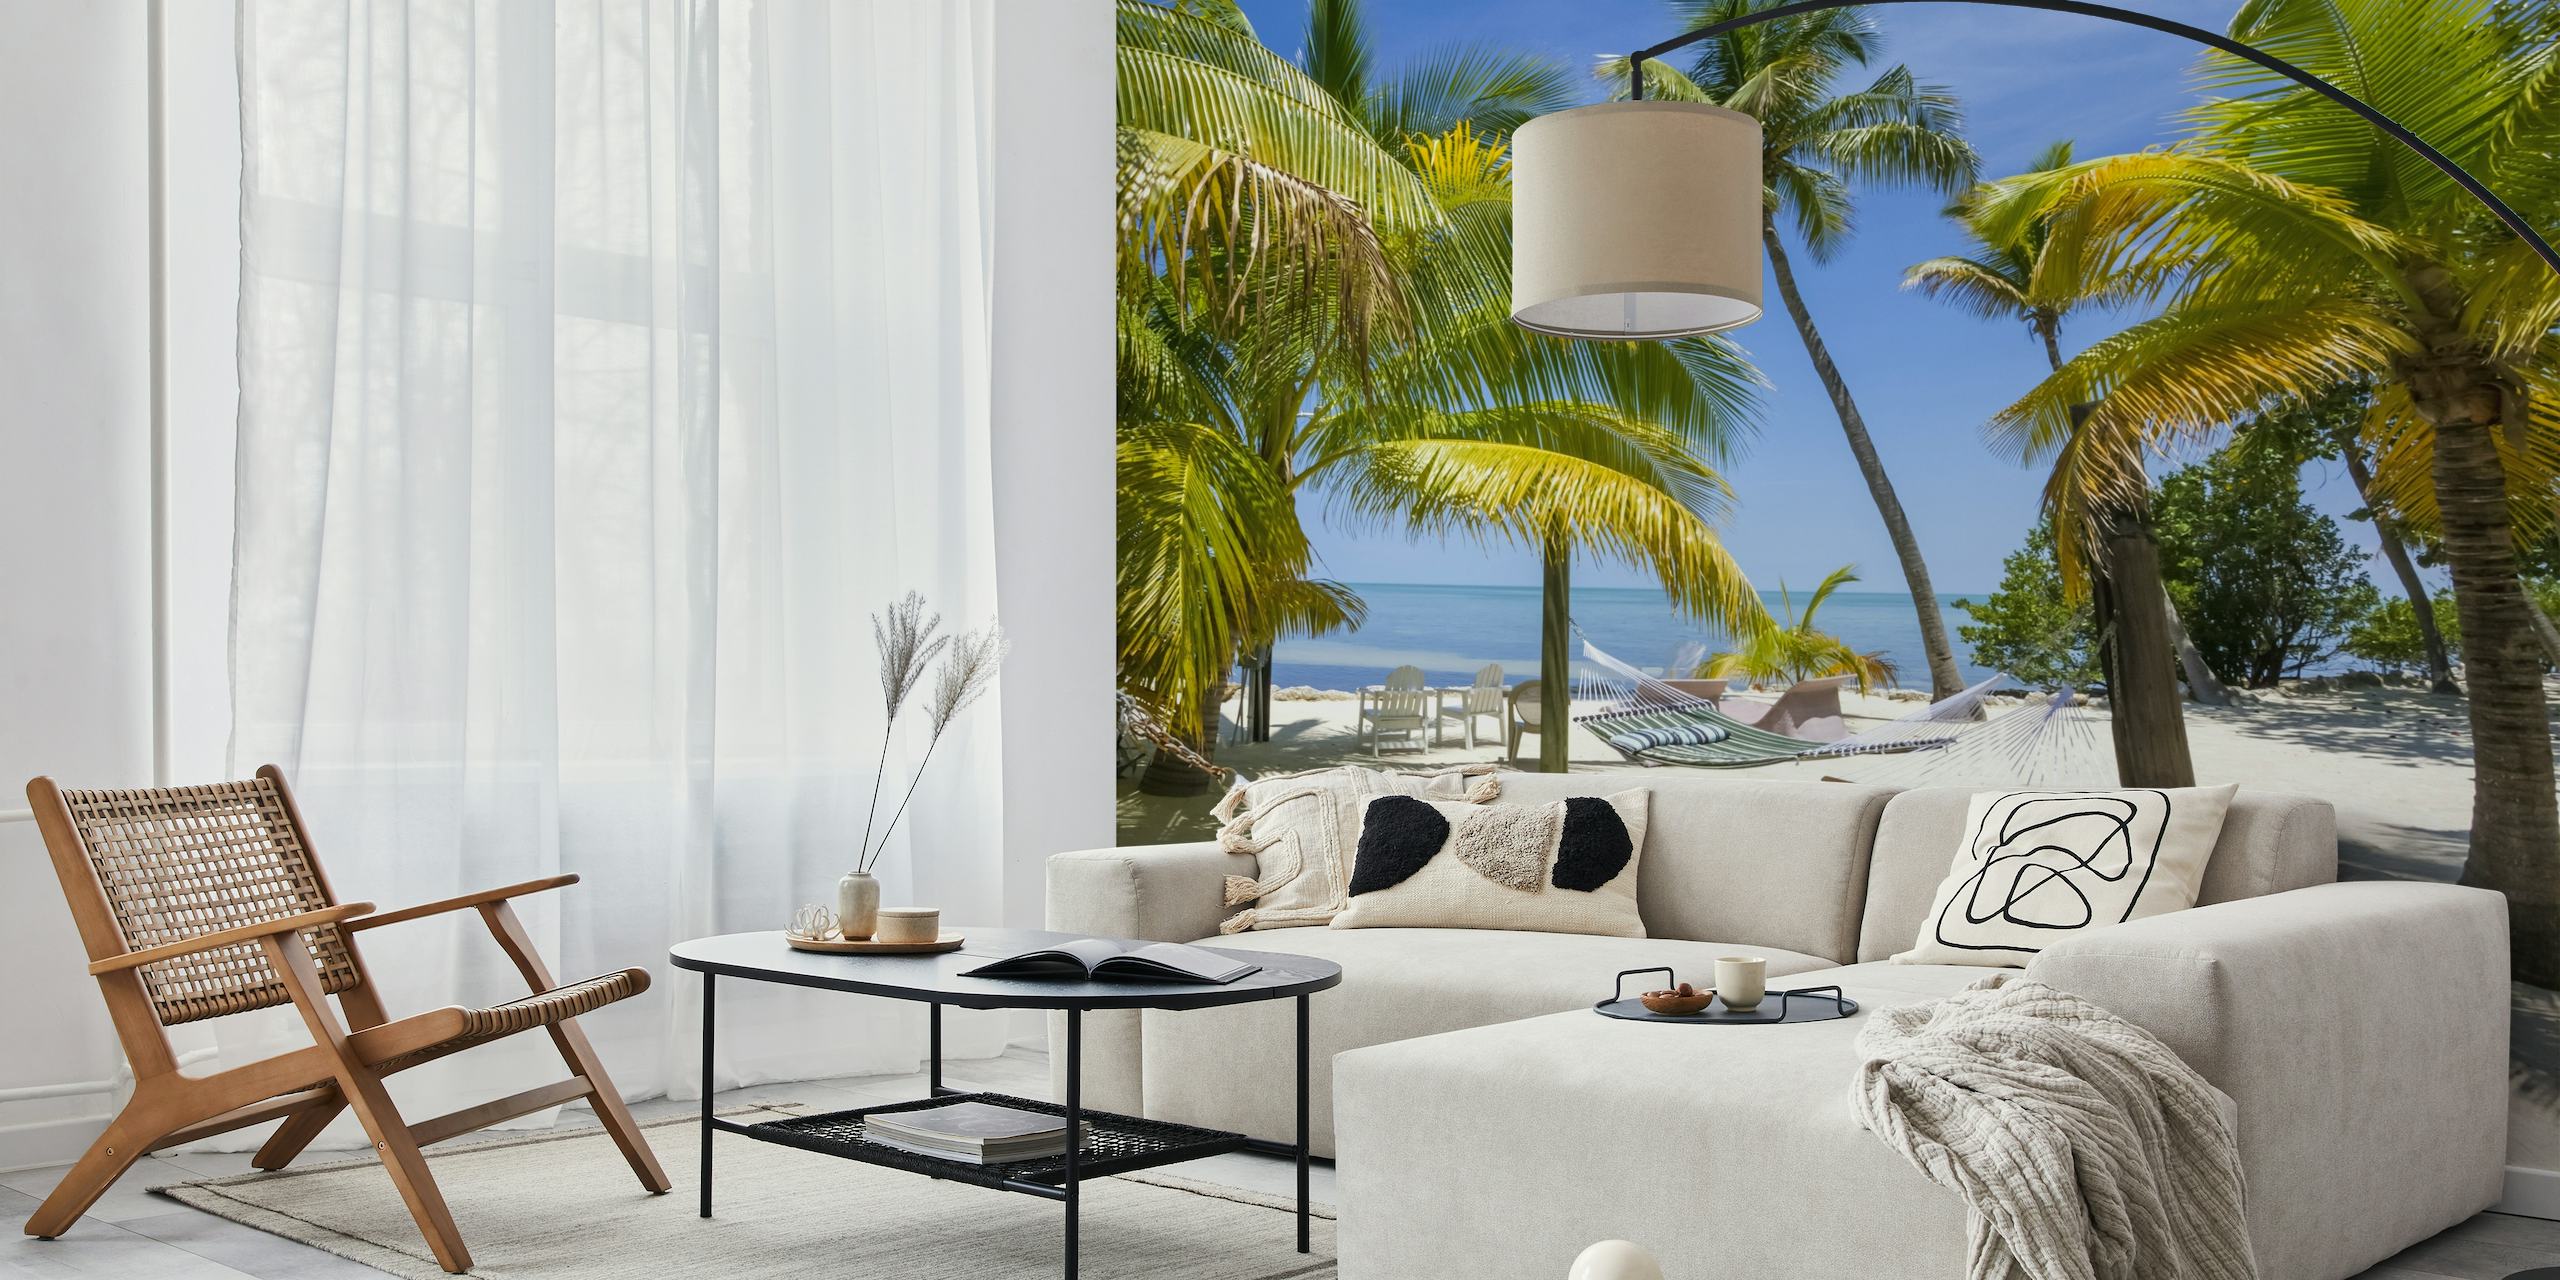 Florida Keys tropisch strand muurschildering met hangmat en palmbomen